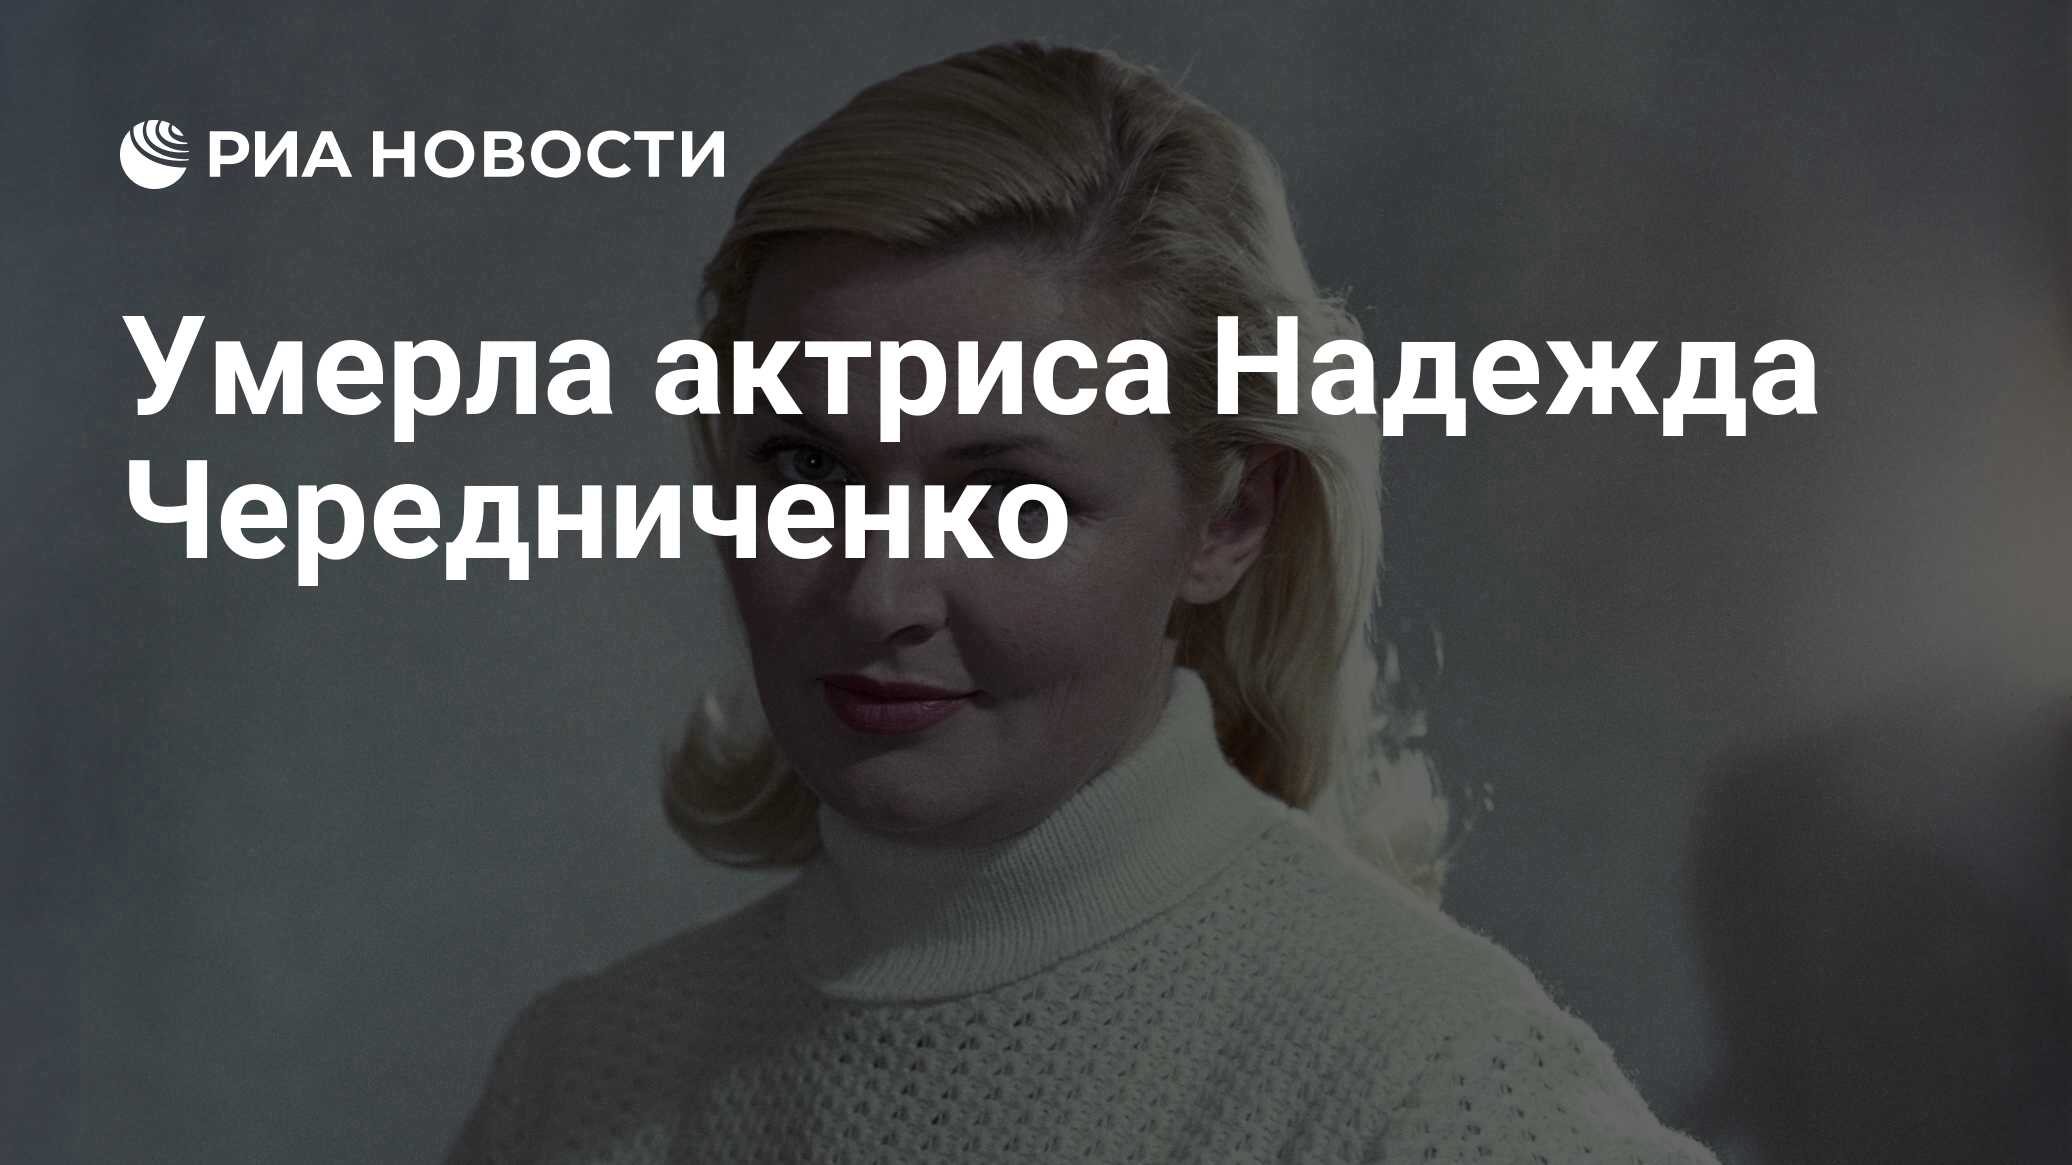 Актриса надежда чередниченко биография личная жизнь фото